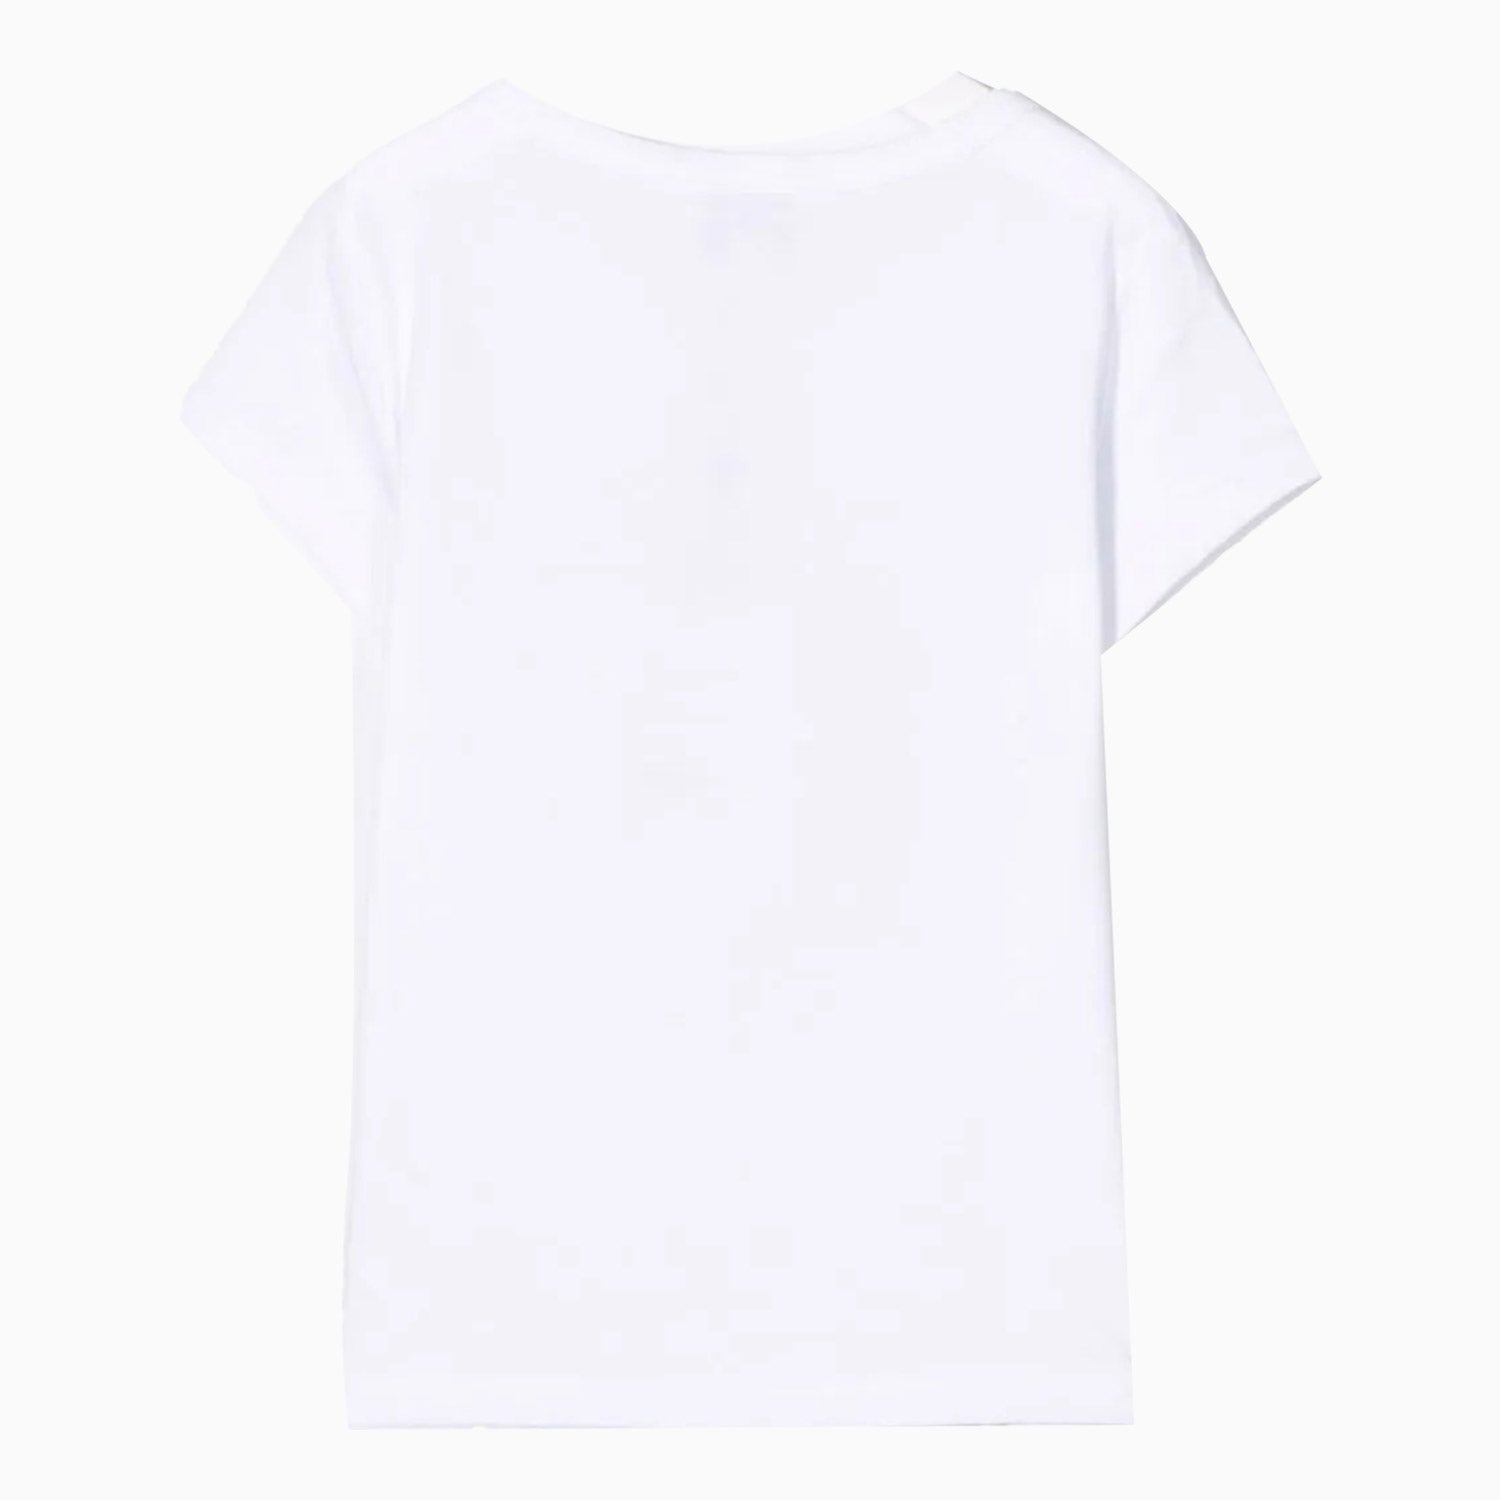 kenzo-kids-tiger-print-t-shirt-toddlers-k05367-10b